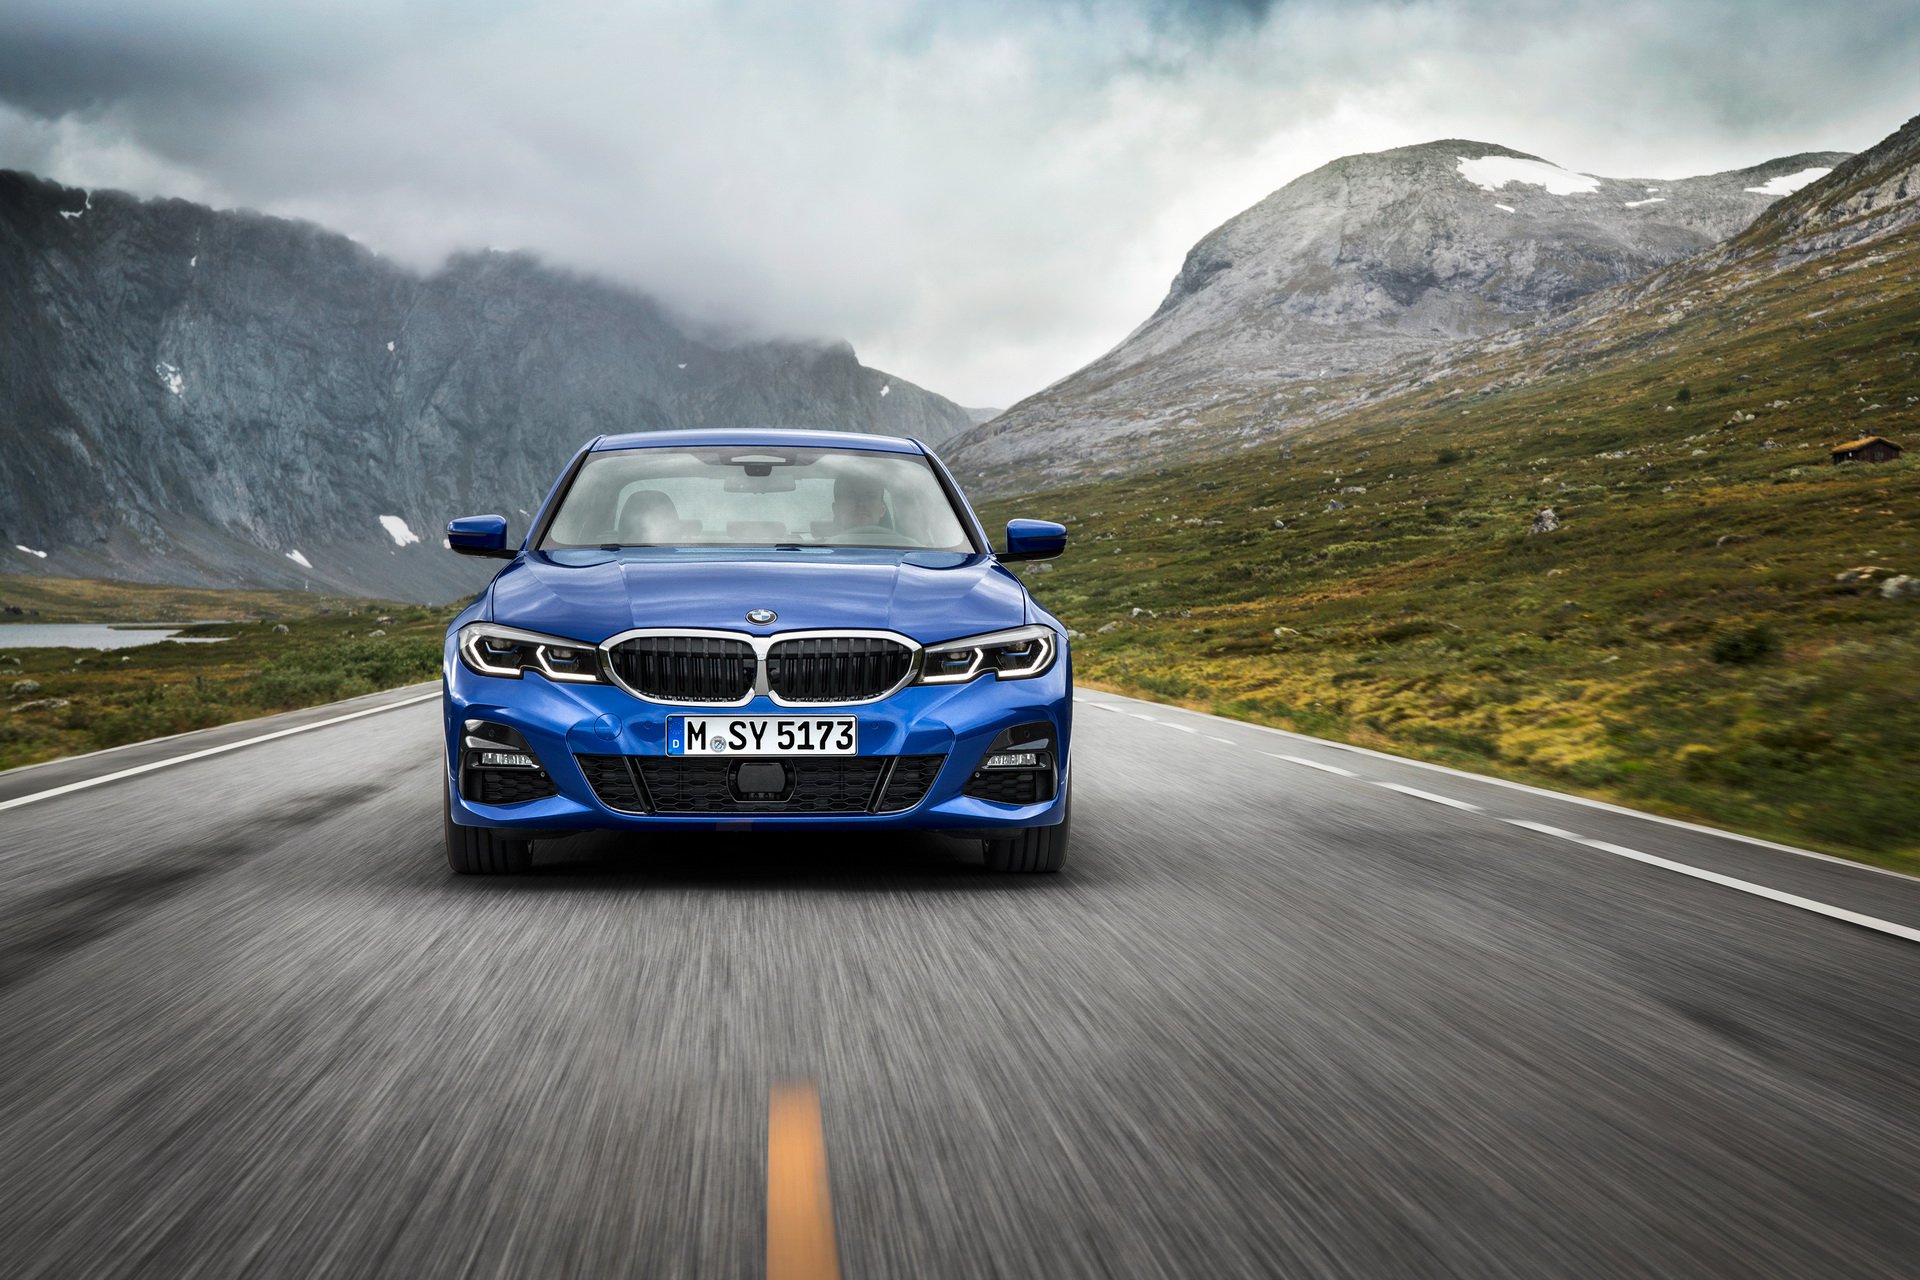 2019 BMW Serii 3 G20 oficjalnie [DANE TECHNICZNE, GALERIA